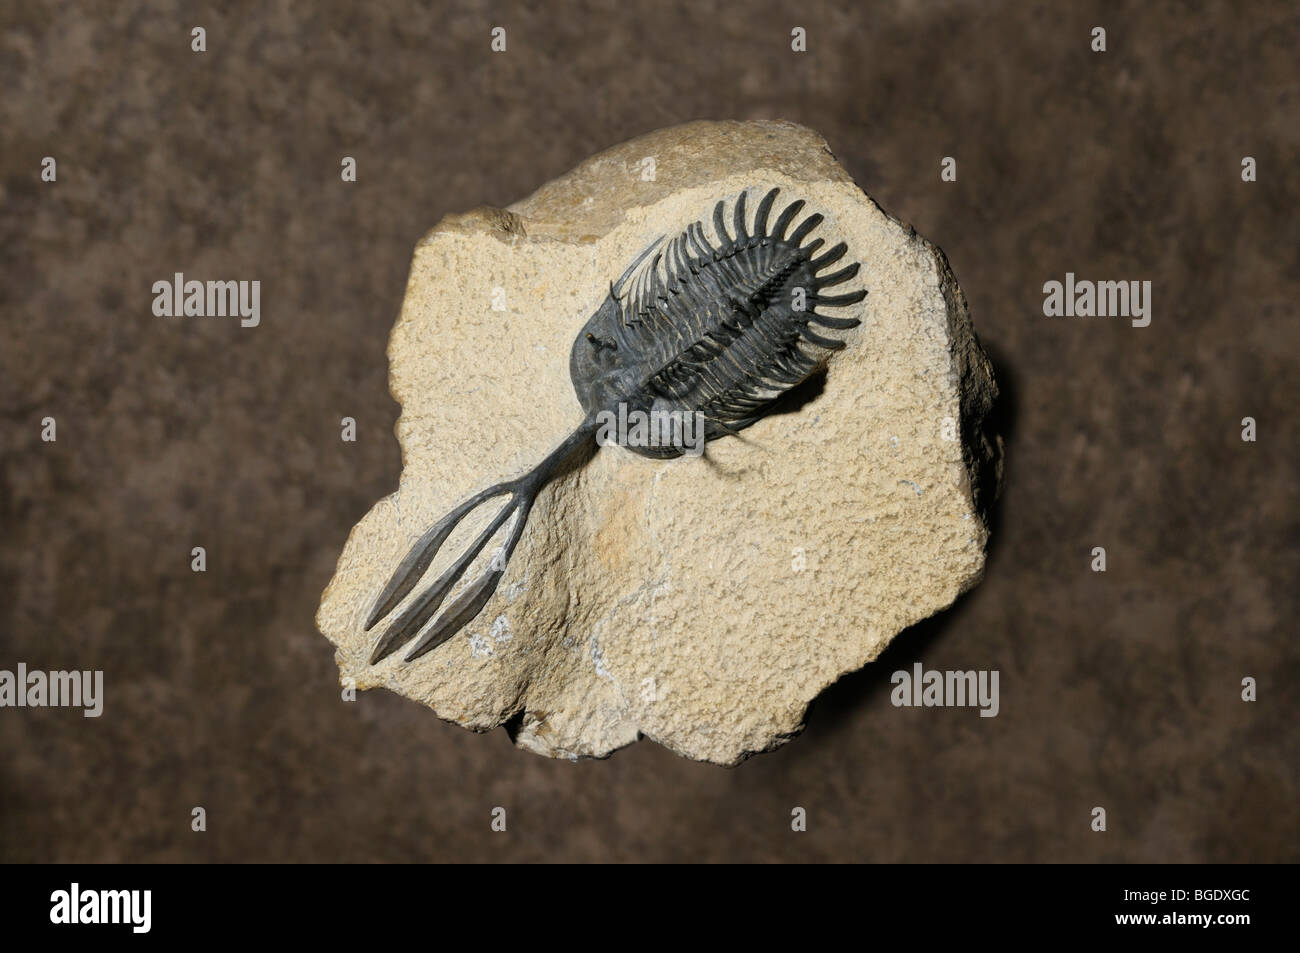 Fossiles de trilobites, Walliserops sp., de la période du Dévonien de l'ère primaire Banque D'Images